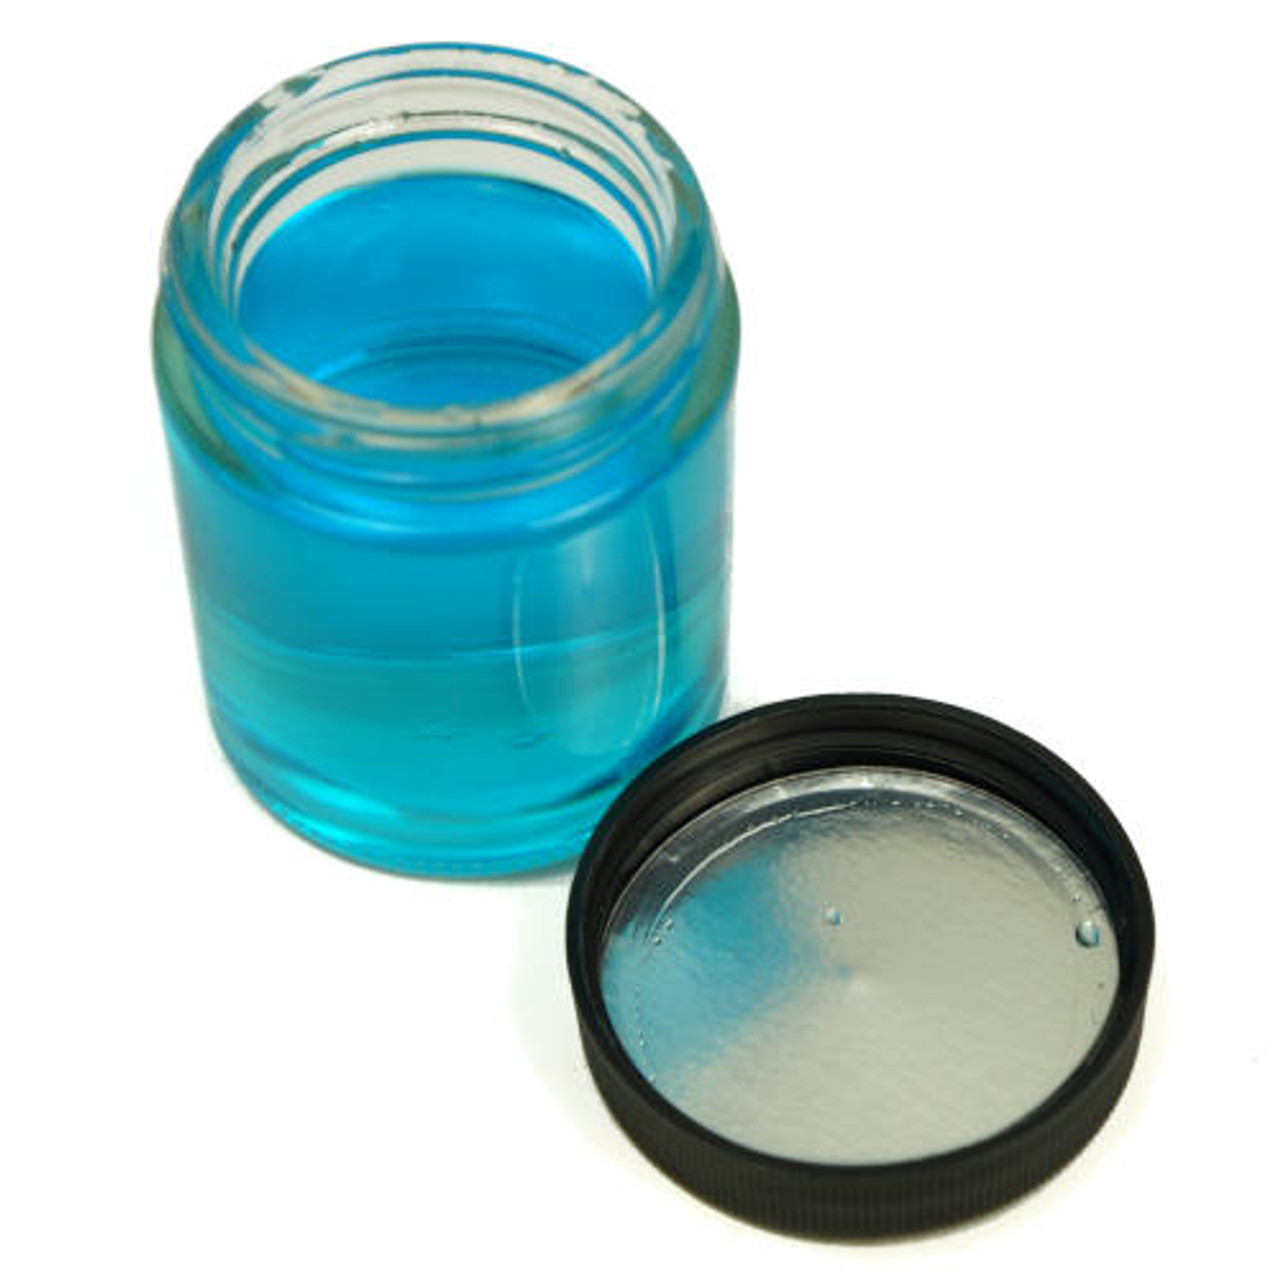 6 OUNCE CLEAR GLASS CYLINDER JAR PKG(6)